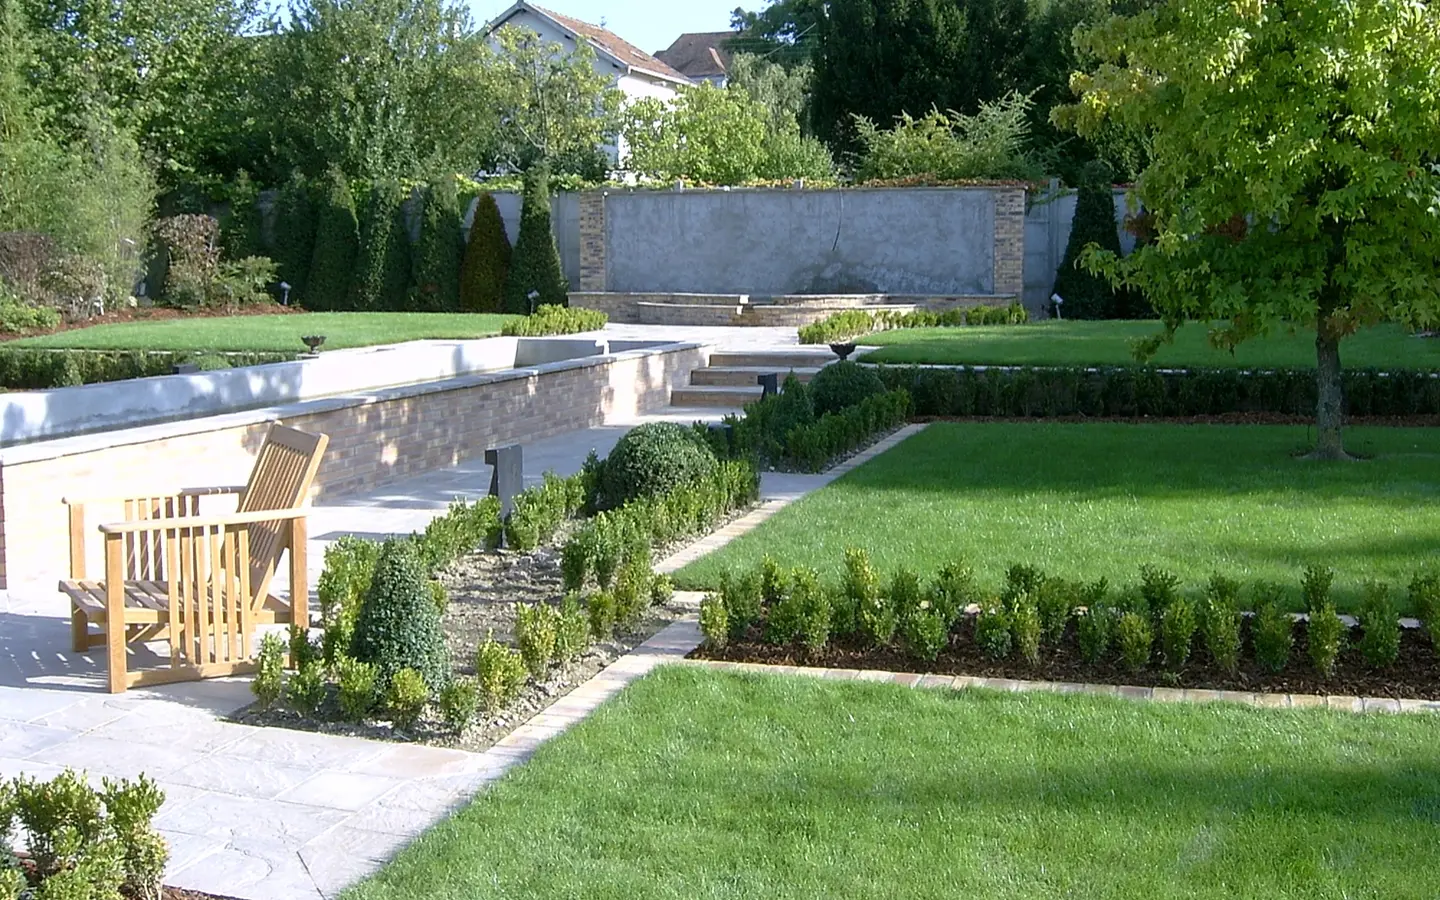 Création d’un jardin de 800m² s’inspirant de la structure des jardins de l’Alhambra et de la végétation des jardins à la française.